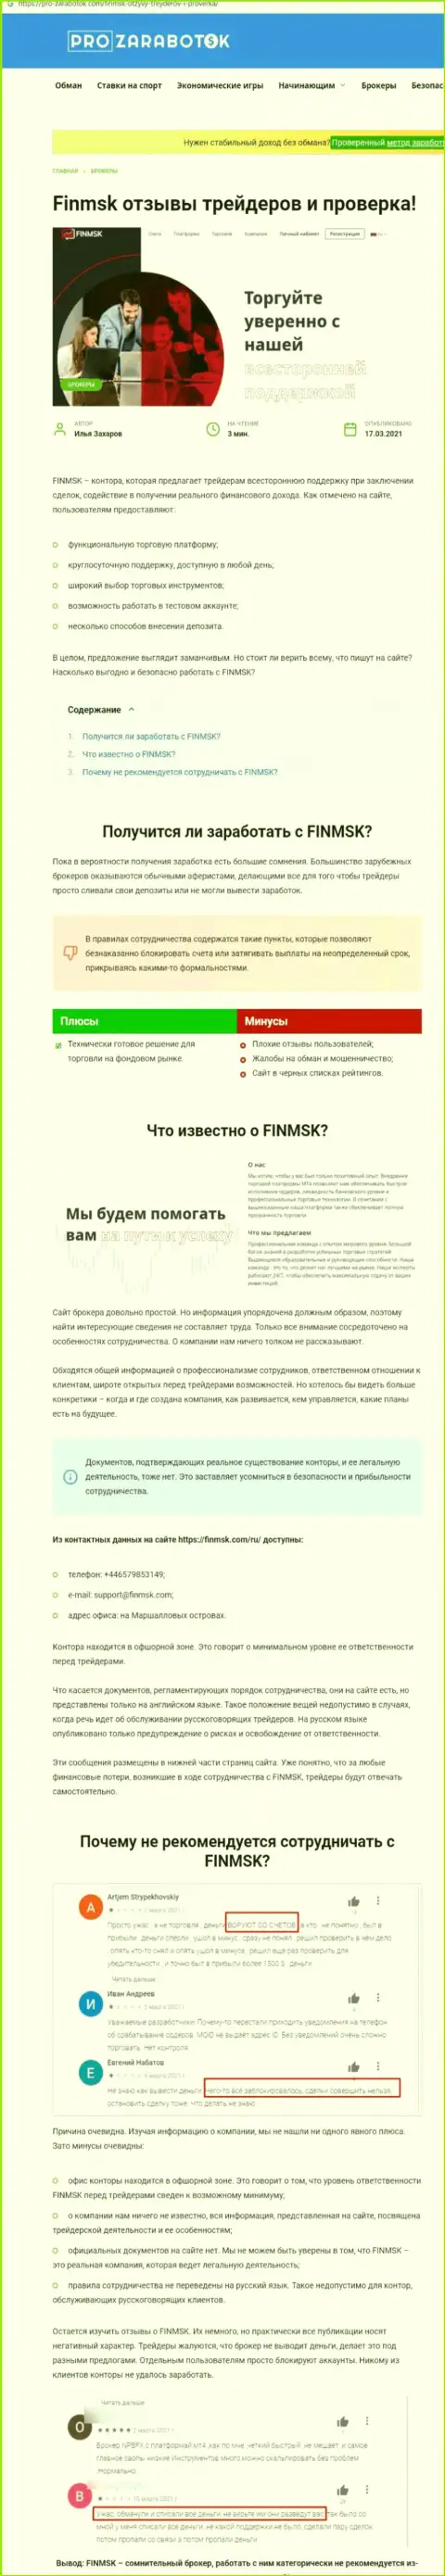 Чем заканчивается совместное взаимодействие с конторой FinMSK ??? Статья о internet-мошеннике